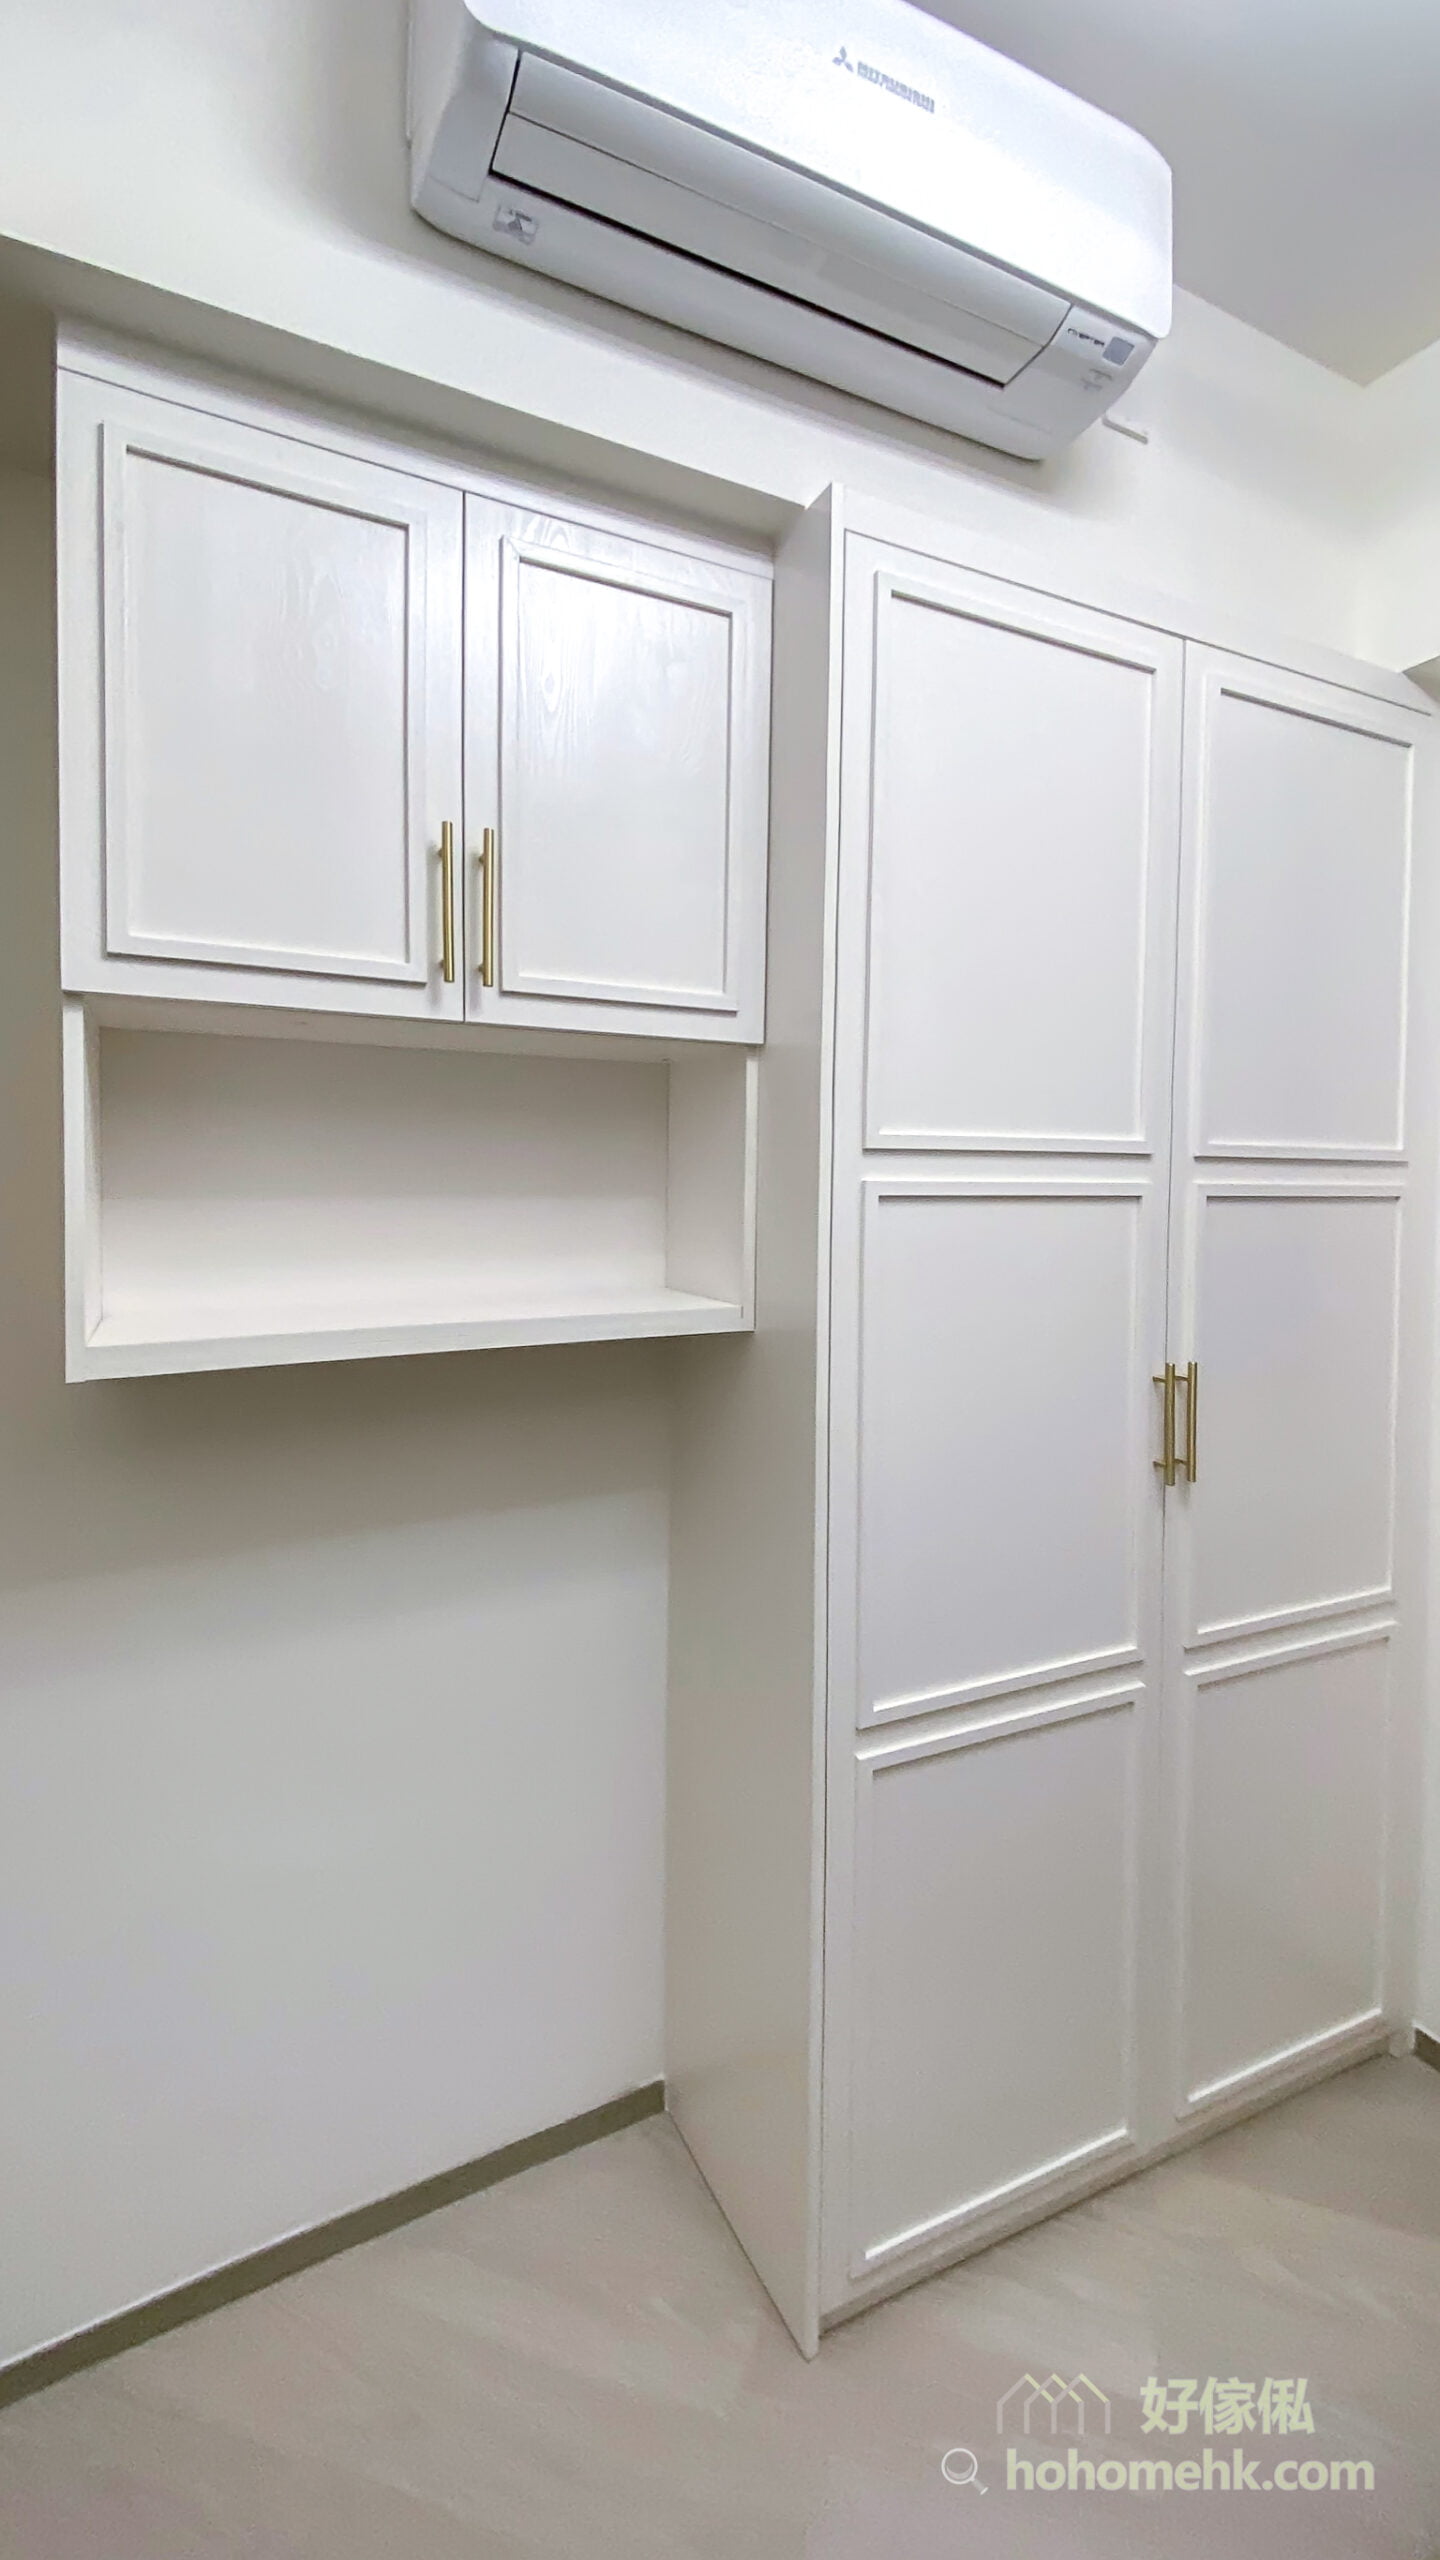 掩門衣櫃的櫃門可以做到立體線條的設計，更容易打造空間的整體風格